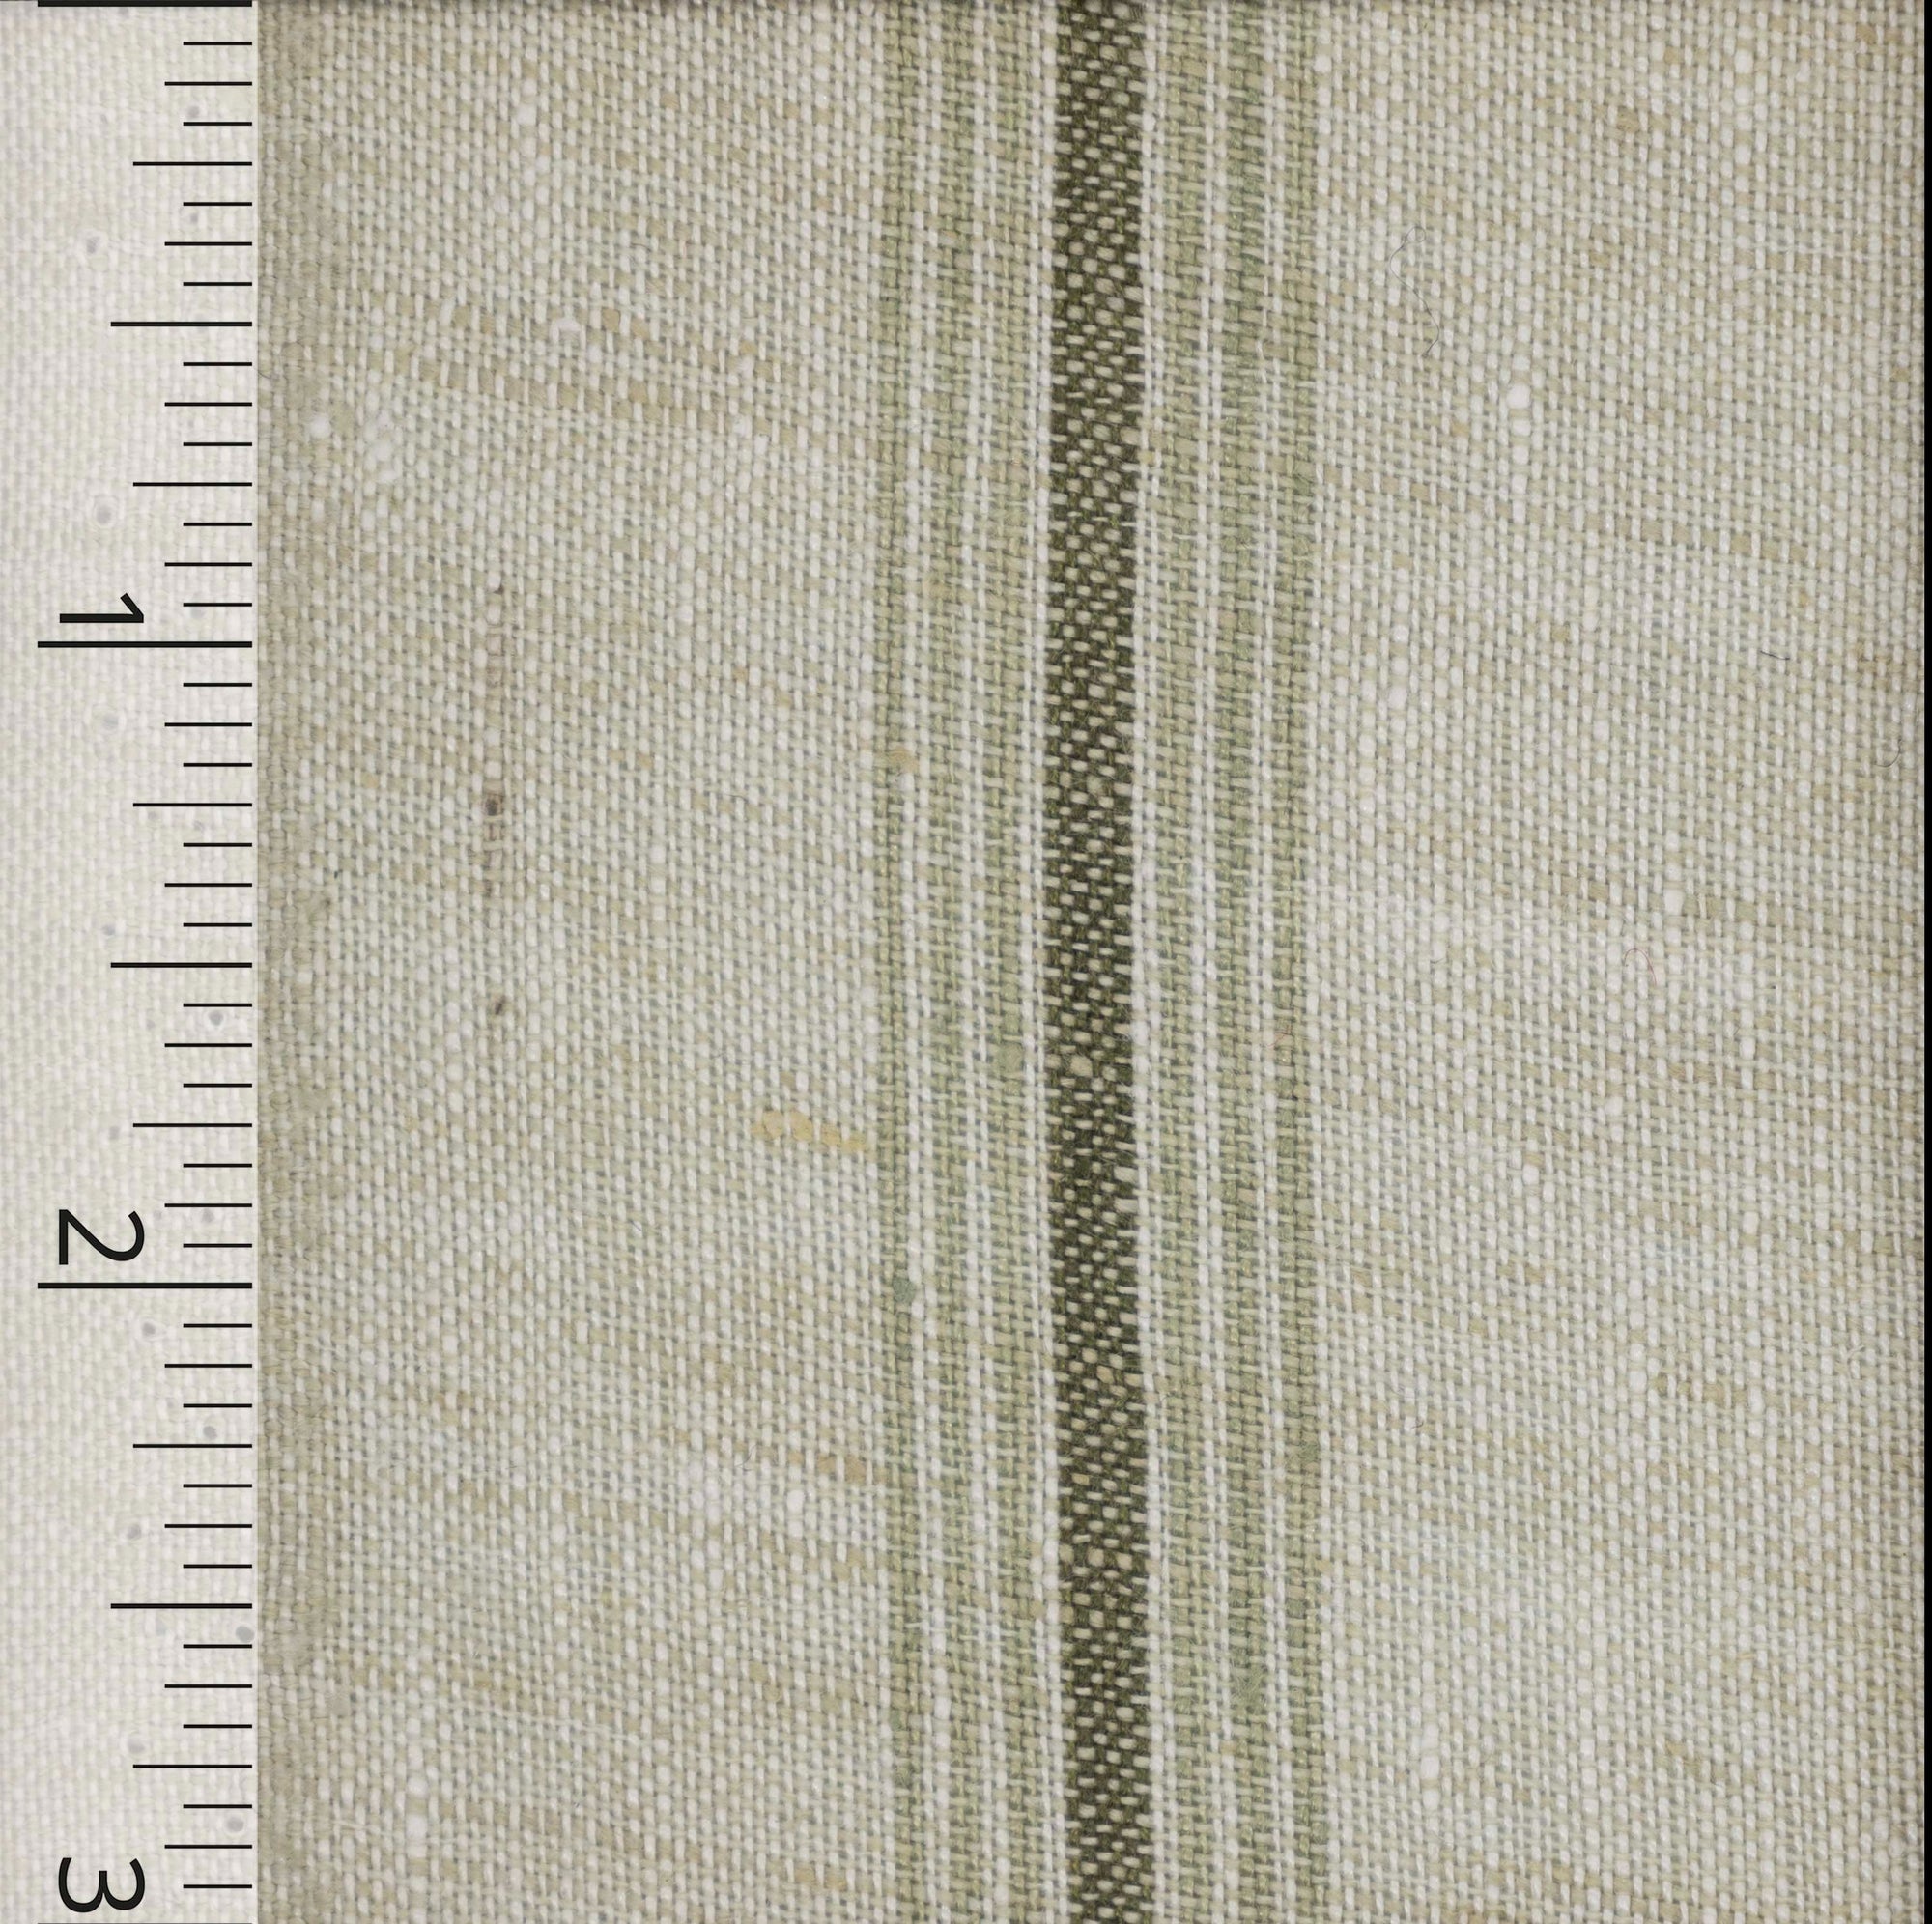 Olive Striped Sage Green Linen - $14.00 yd. - Burnley & Trowbridge Co.